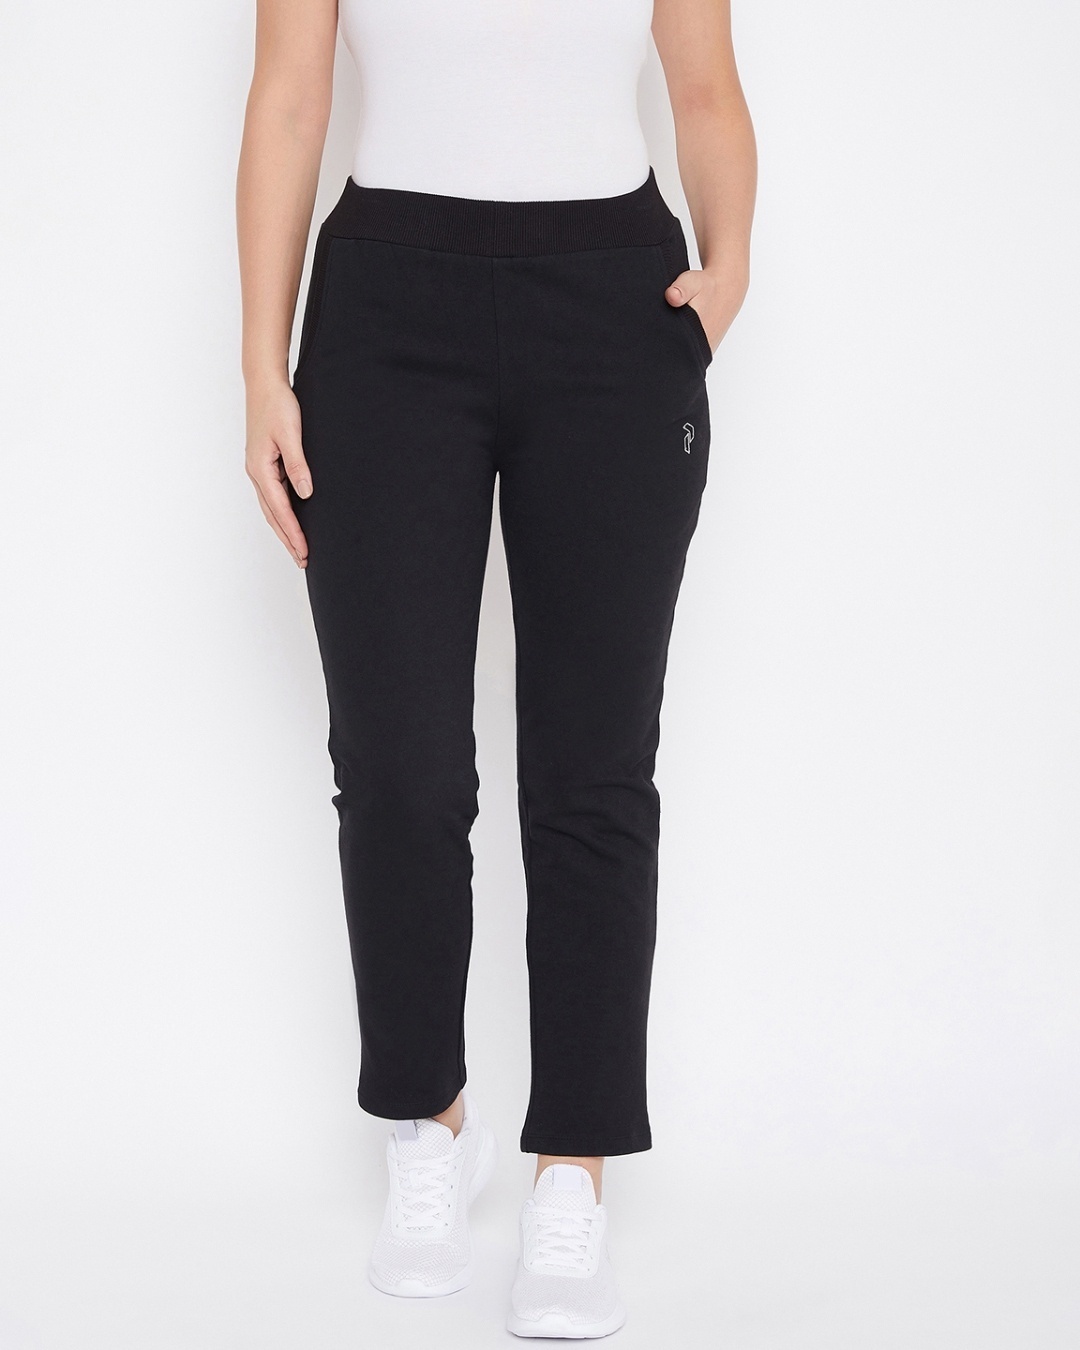 Shop Women's Black Cotton Track Pants-Front